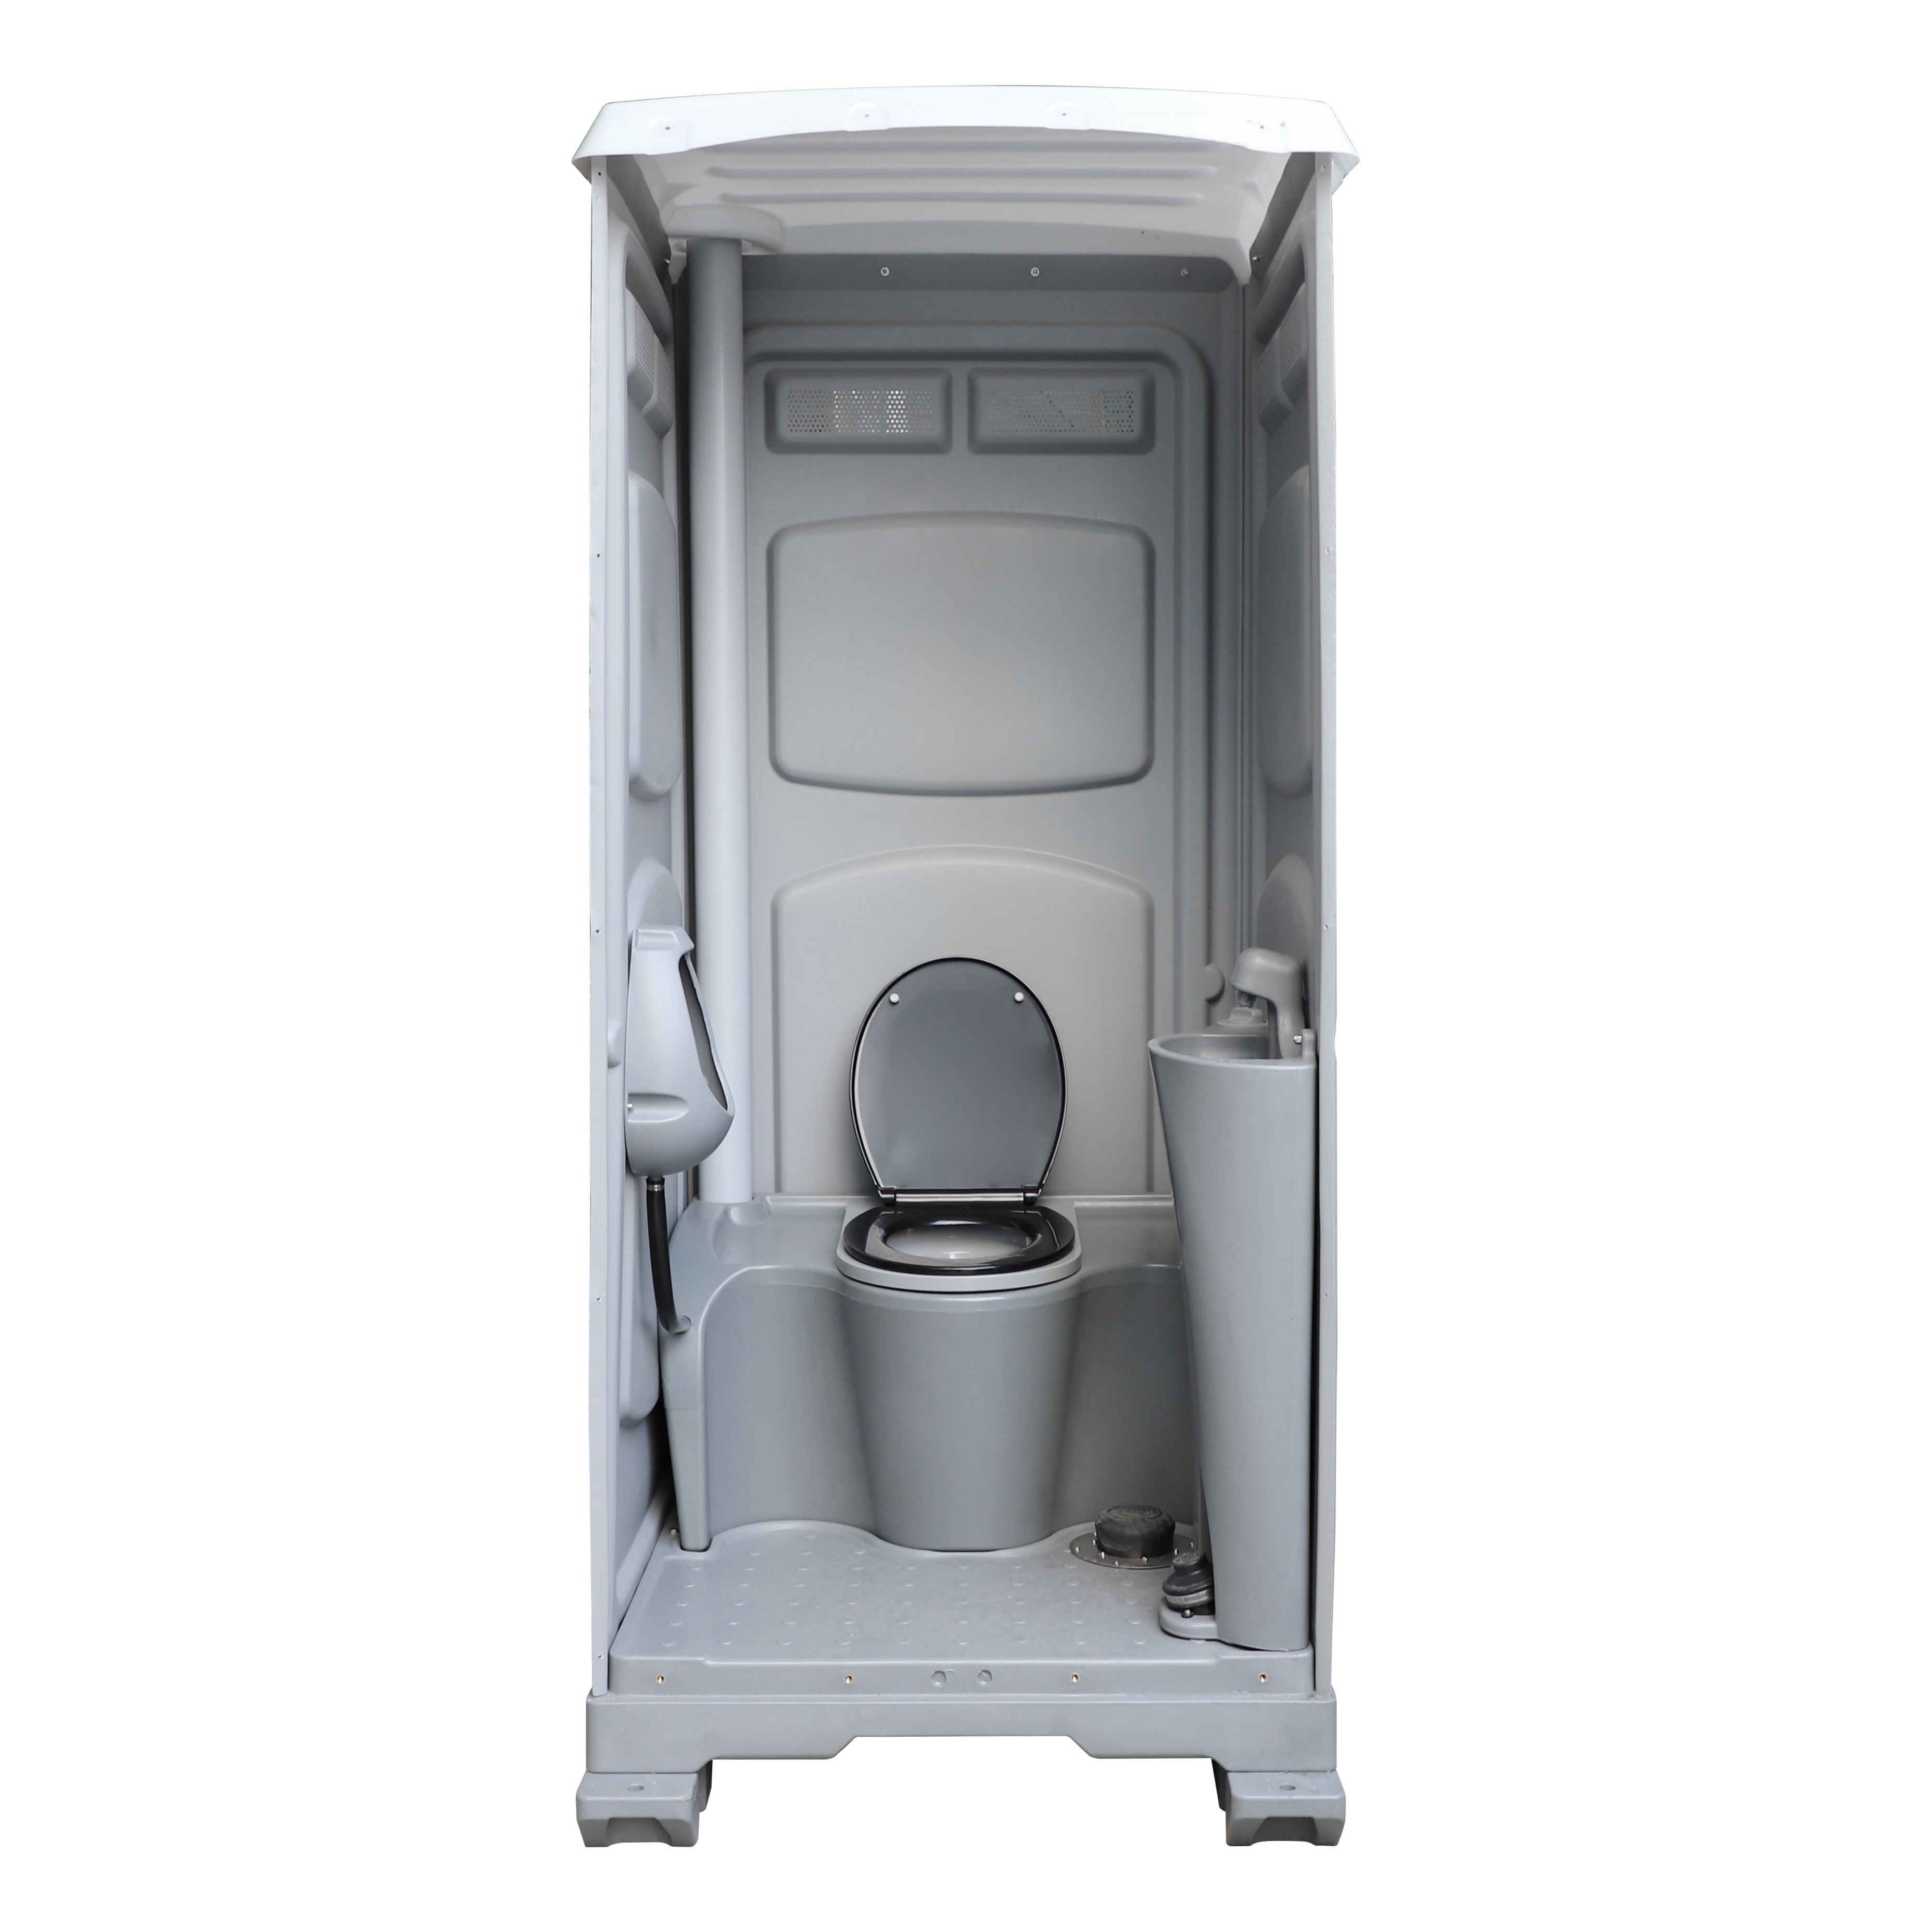 TPT-M01 Mobile Flushing Toilet Construction Restroom